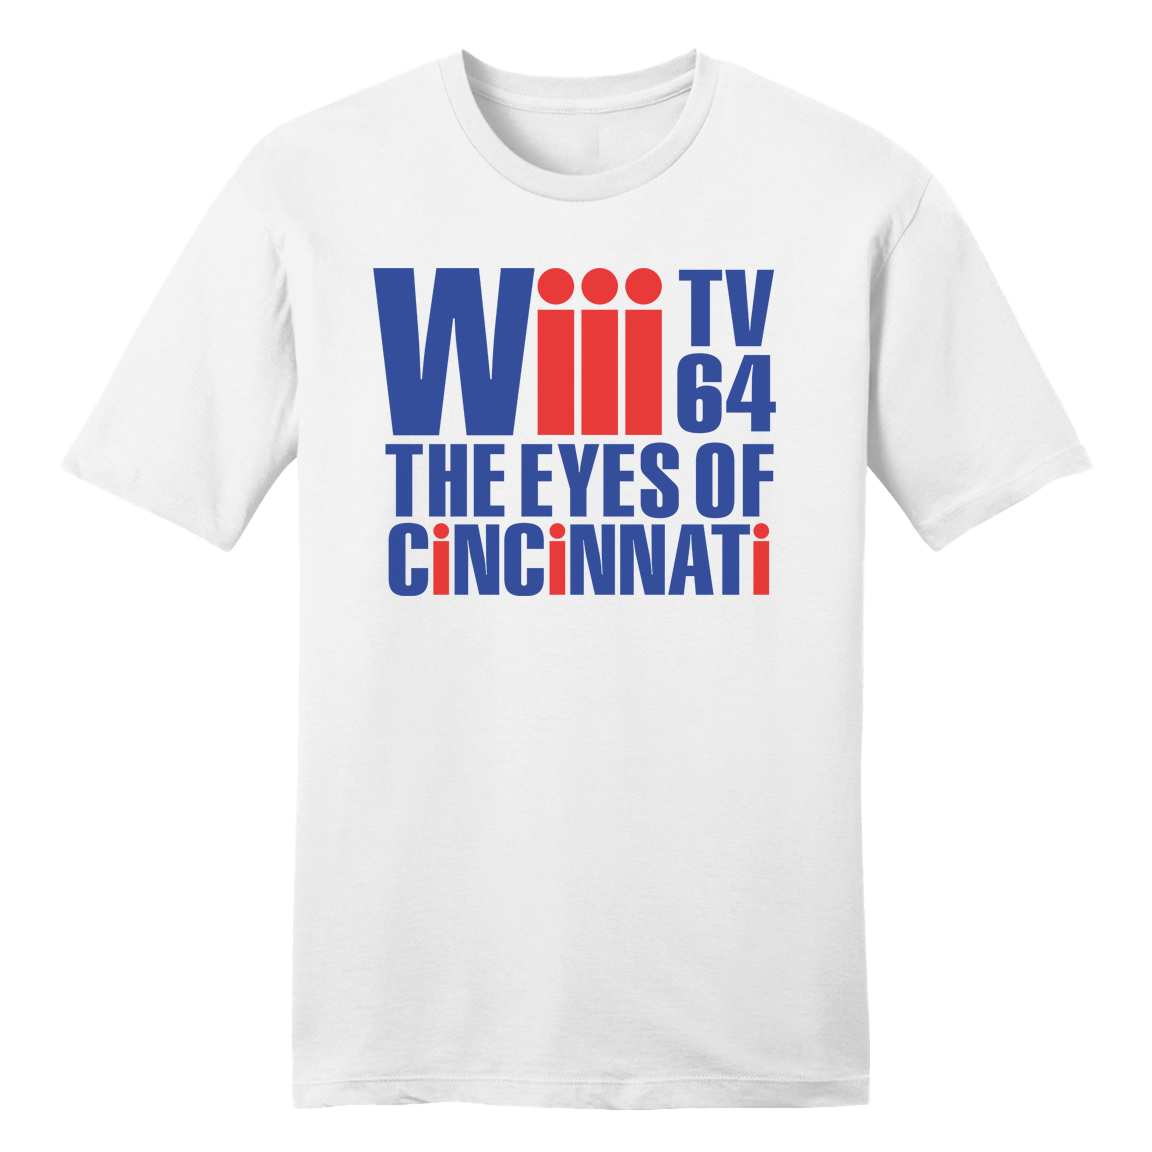 Wiii Channel 64 The Eyes of Cincinnati